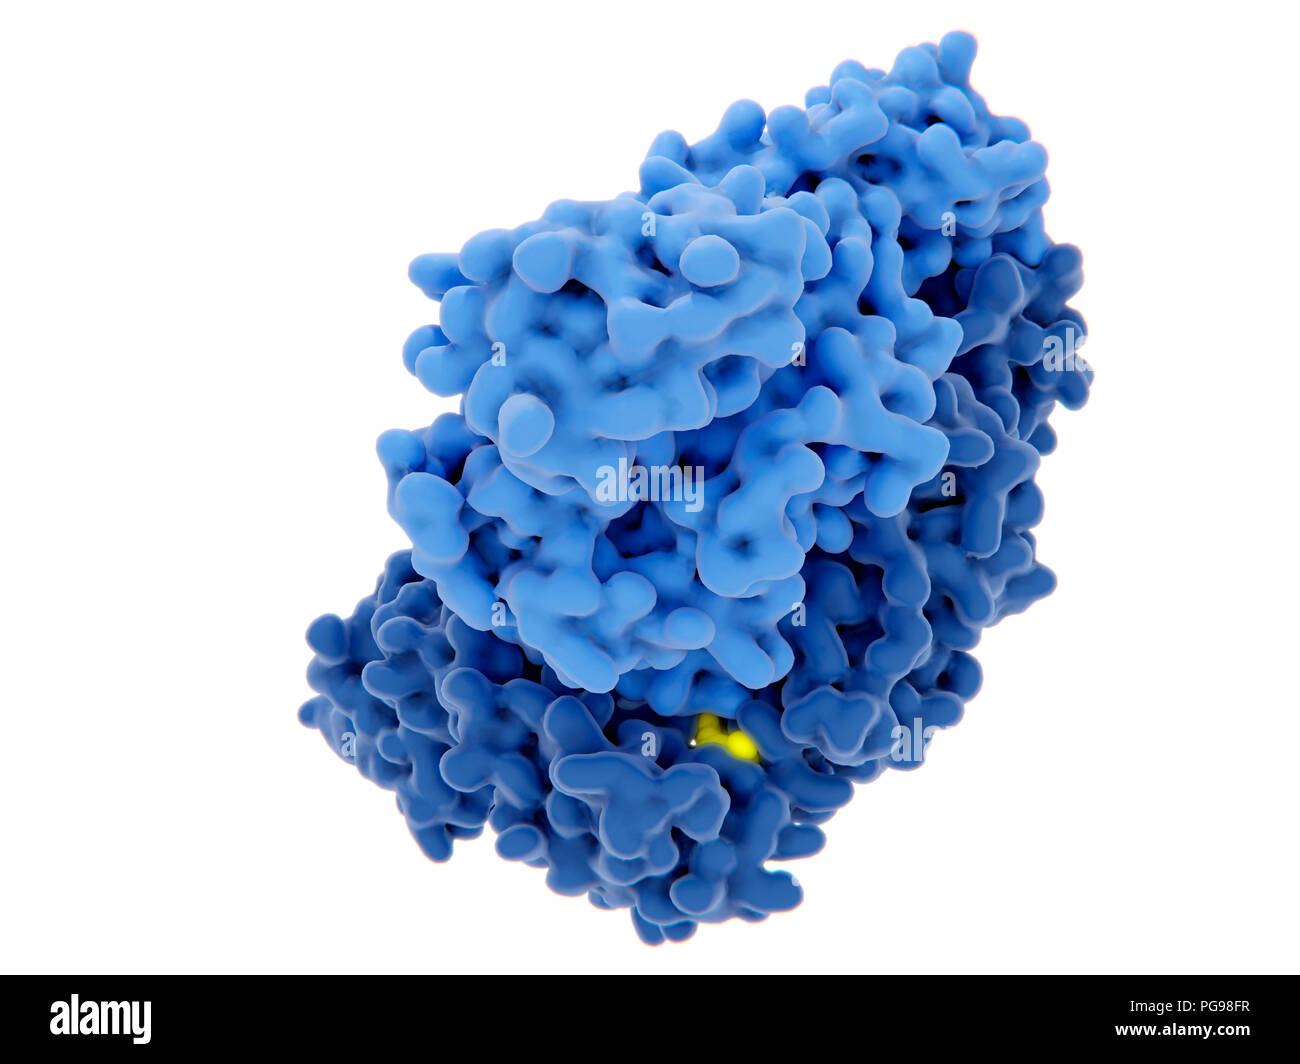 Die reverse Transkriptase von HIV-1-Hemmung, Illustration. Das human immunodeficiency virus Einzelstrang-RNA-Genom in Doppel umgewandelt wird Doppelstrang-DNA, die von der viralen reversen Transkriptase (blau) und dann die DNA in die DNA der infizierten menschlichen Zelle integriert ist. Die reverse Transkriptase ist eines der wichtigsten Ziele der Virus Vermehrung durch einen Inhibitor zu stören. Es gibt Nukleosid und Nukleotid-hemmer, nicht-nukleosidische Hemmer. Eine dieser Inhibitoren (Gelb) angezeigt wird, die Bindung an die reverse Transkriptase. Stockfoto